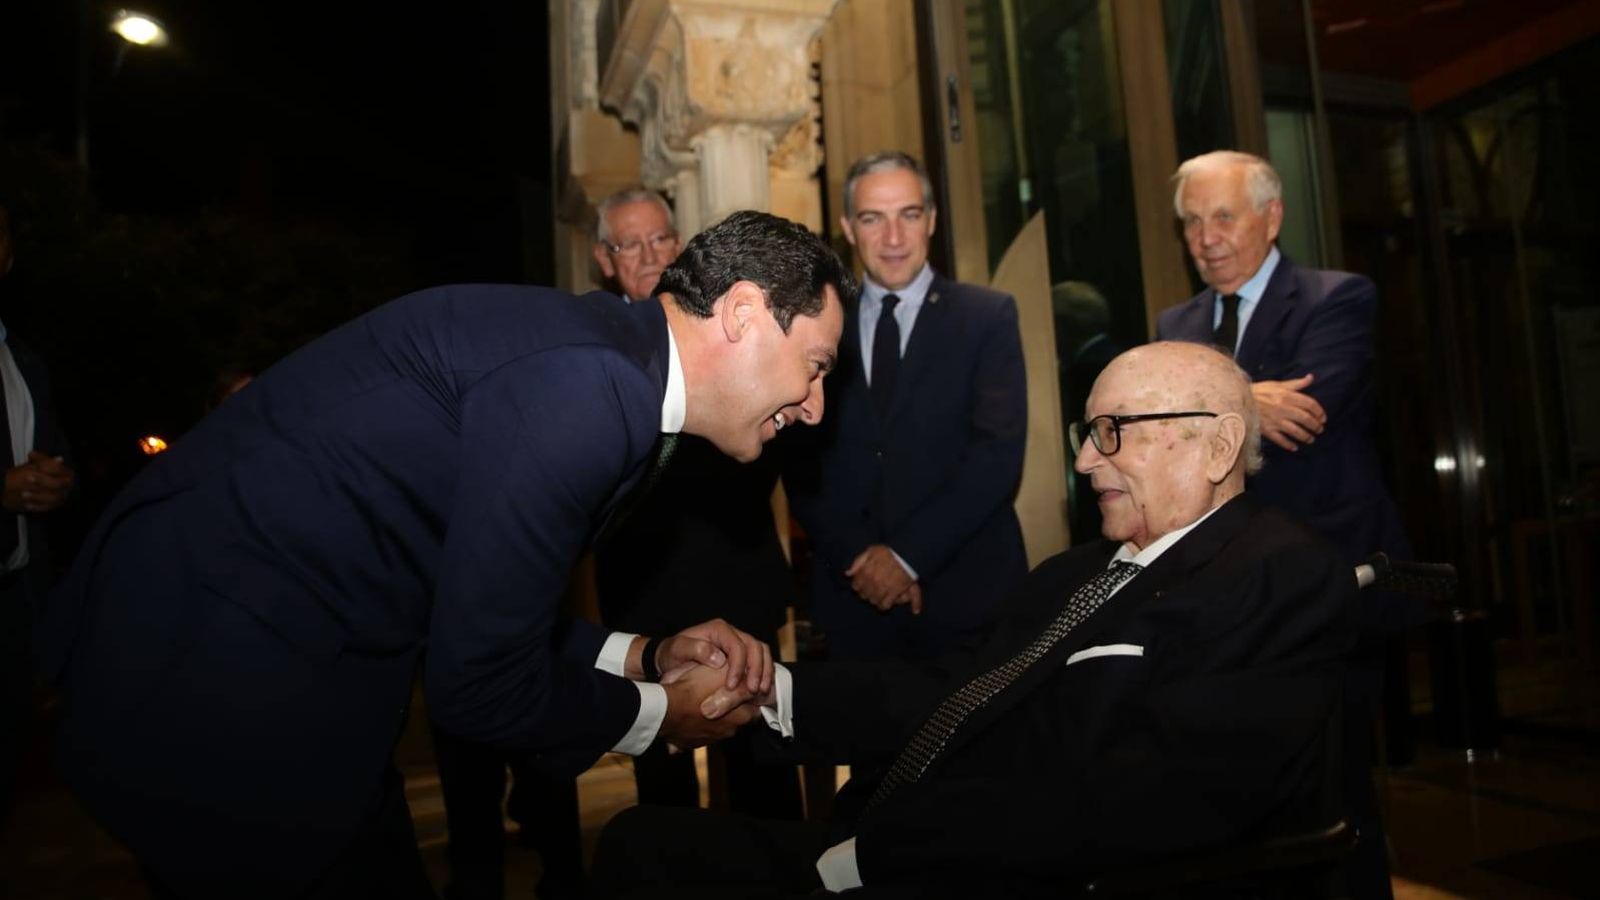 Foto: Imagen del homenaje a Manuel Clavero en Andalucía, con Juan Manuel Moreno, presidente de la Junta de Andalucía saludando a Clavero. (Fundación Rafael Escuredo)